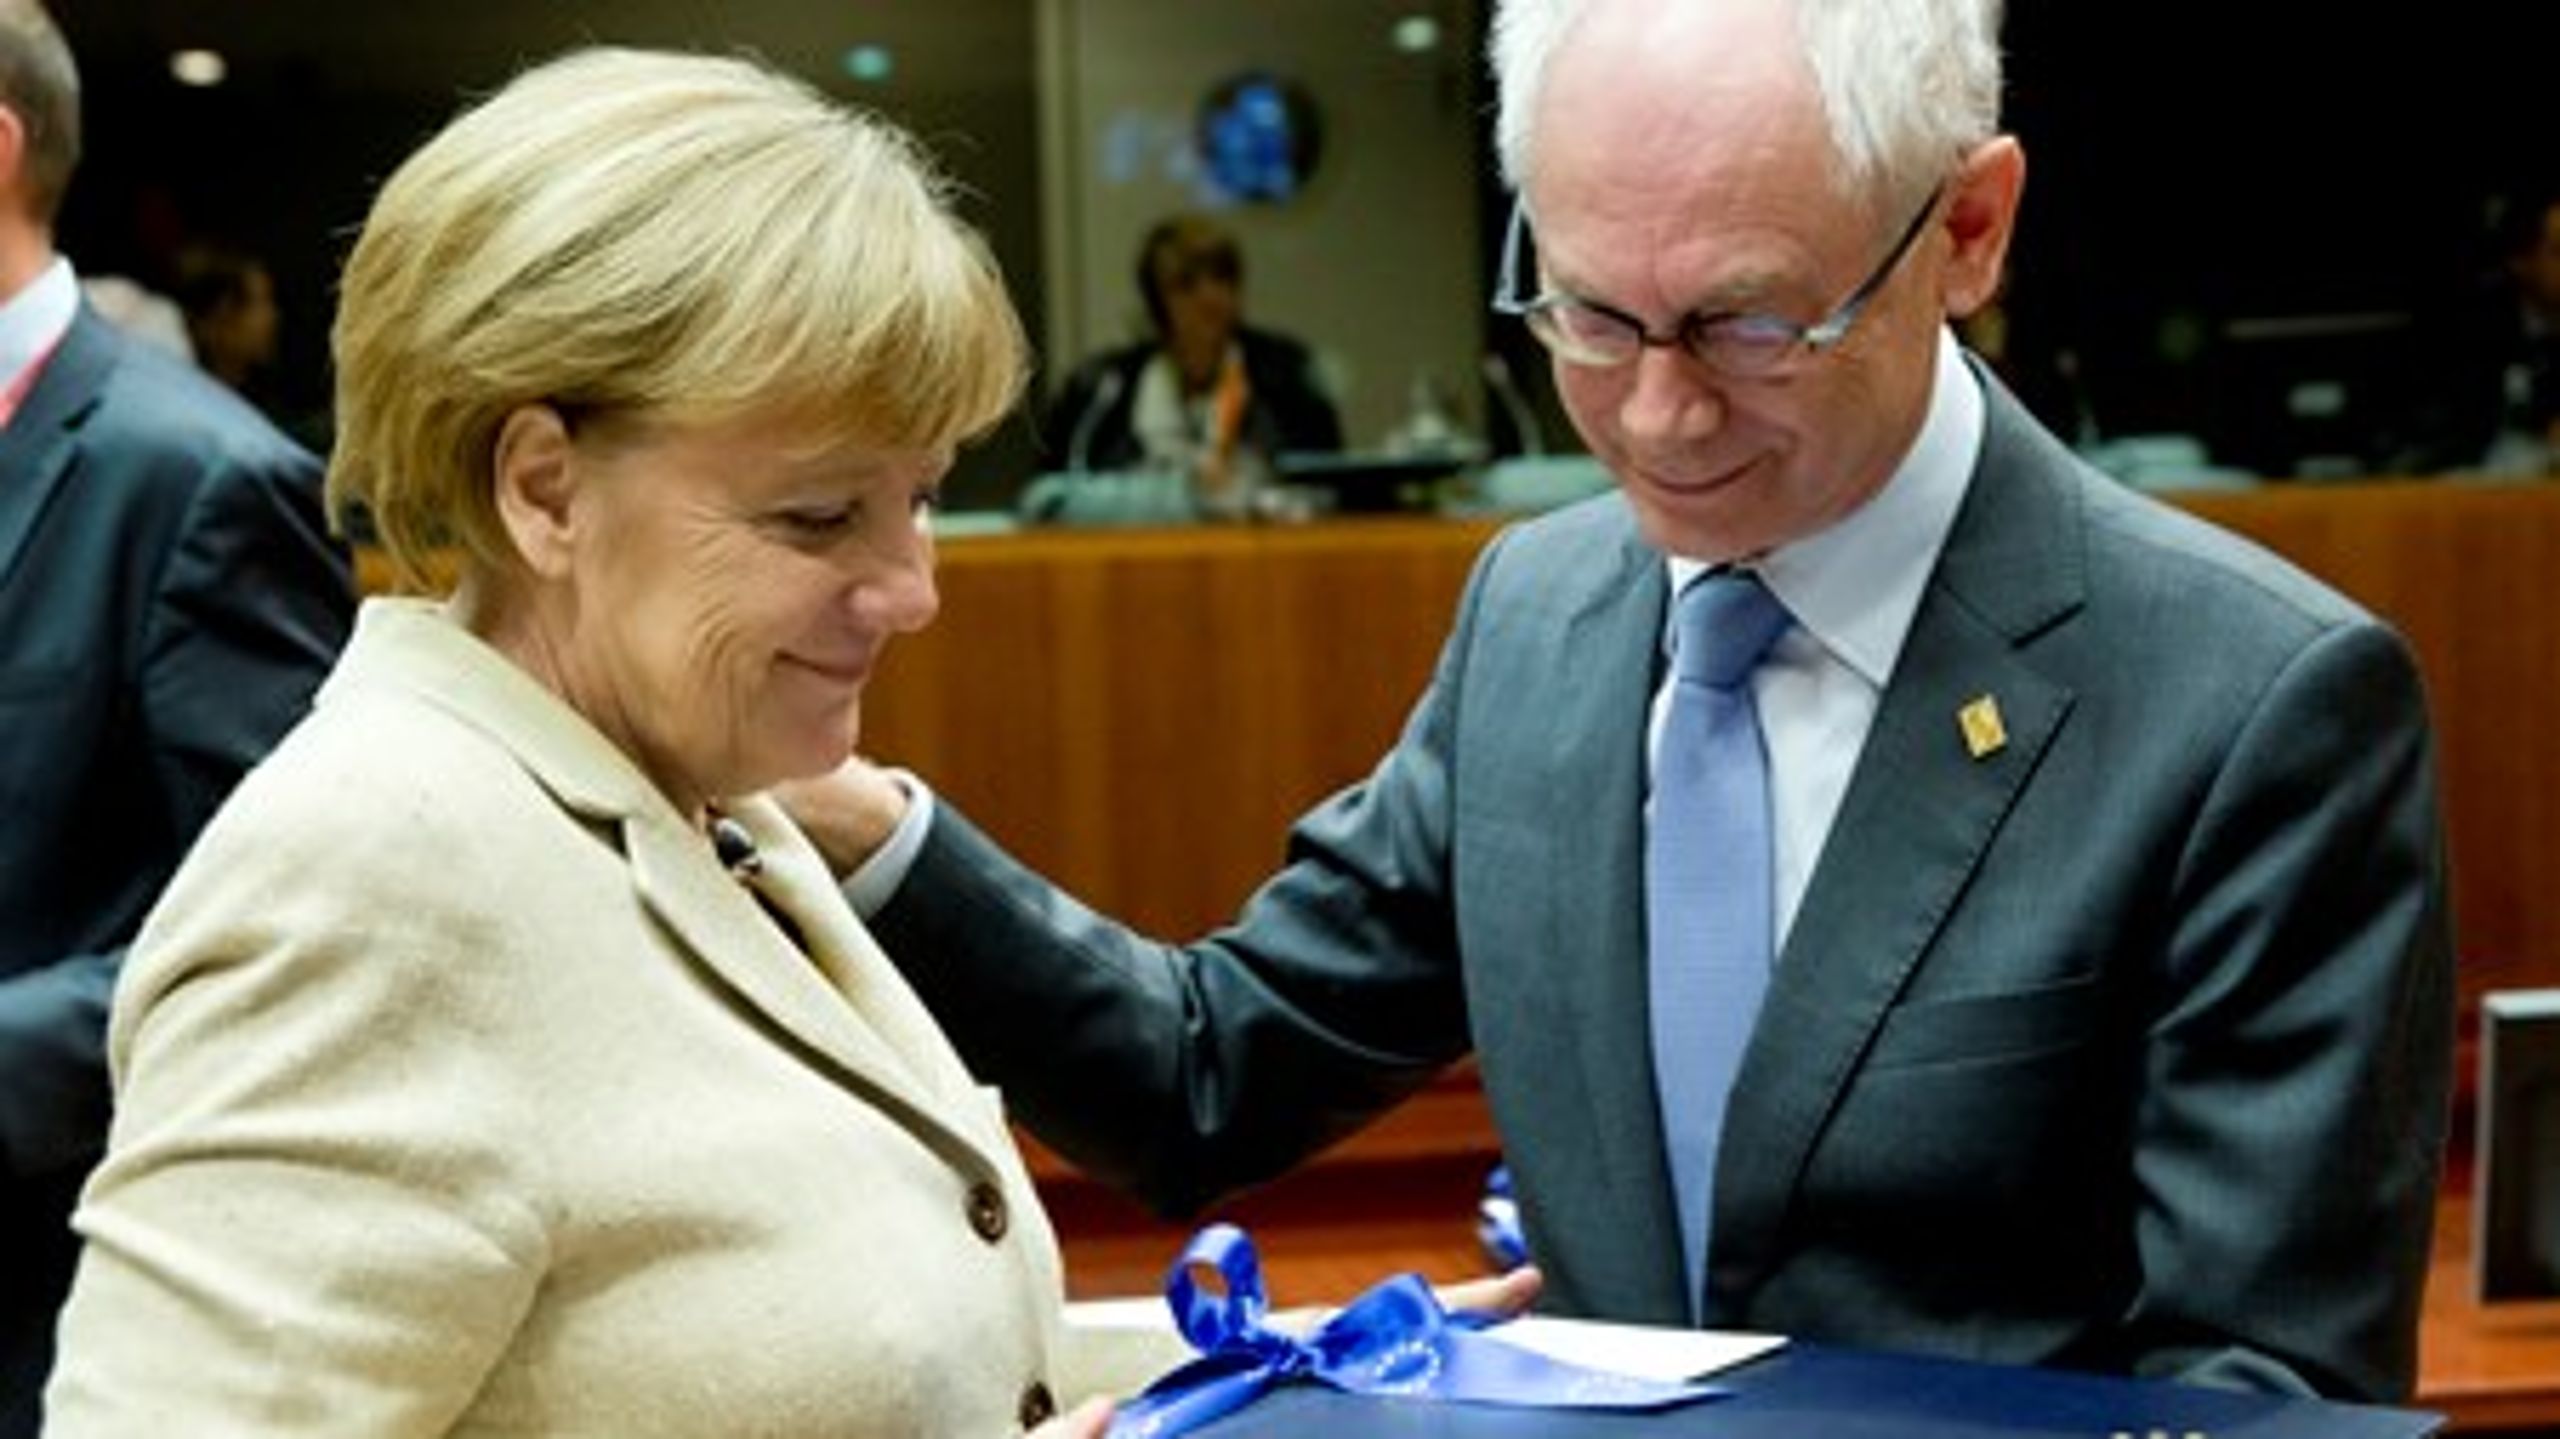 Den tyske kansler Angela Merkel overrækker en afskedsgave til nu afgåede formand for Det Europæiske Råd, Herman Van Rompuy. "Du vil blive savnet," sagde hun.